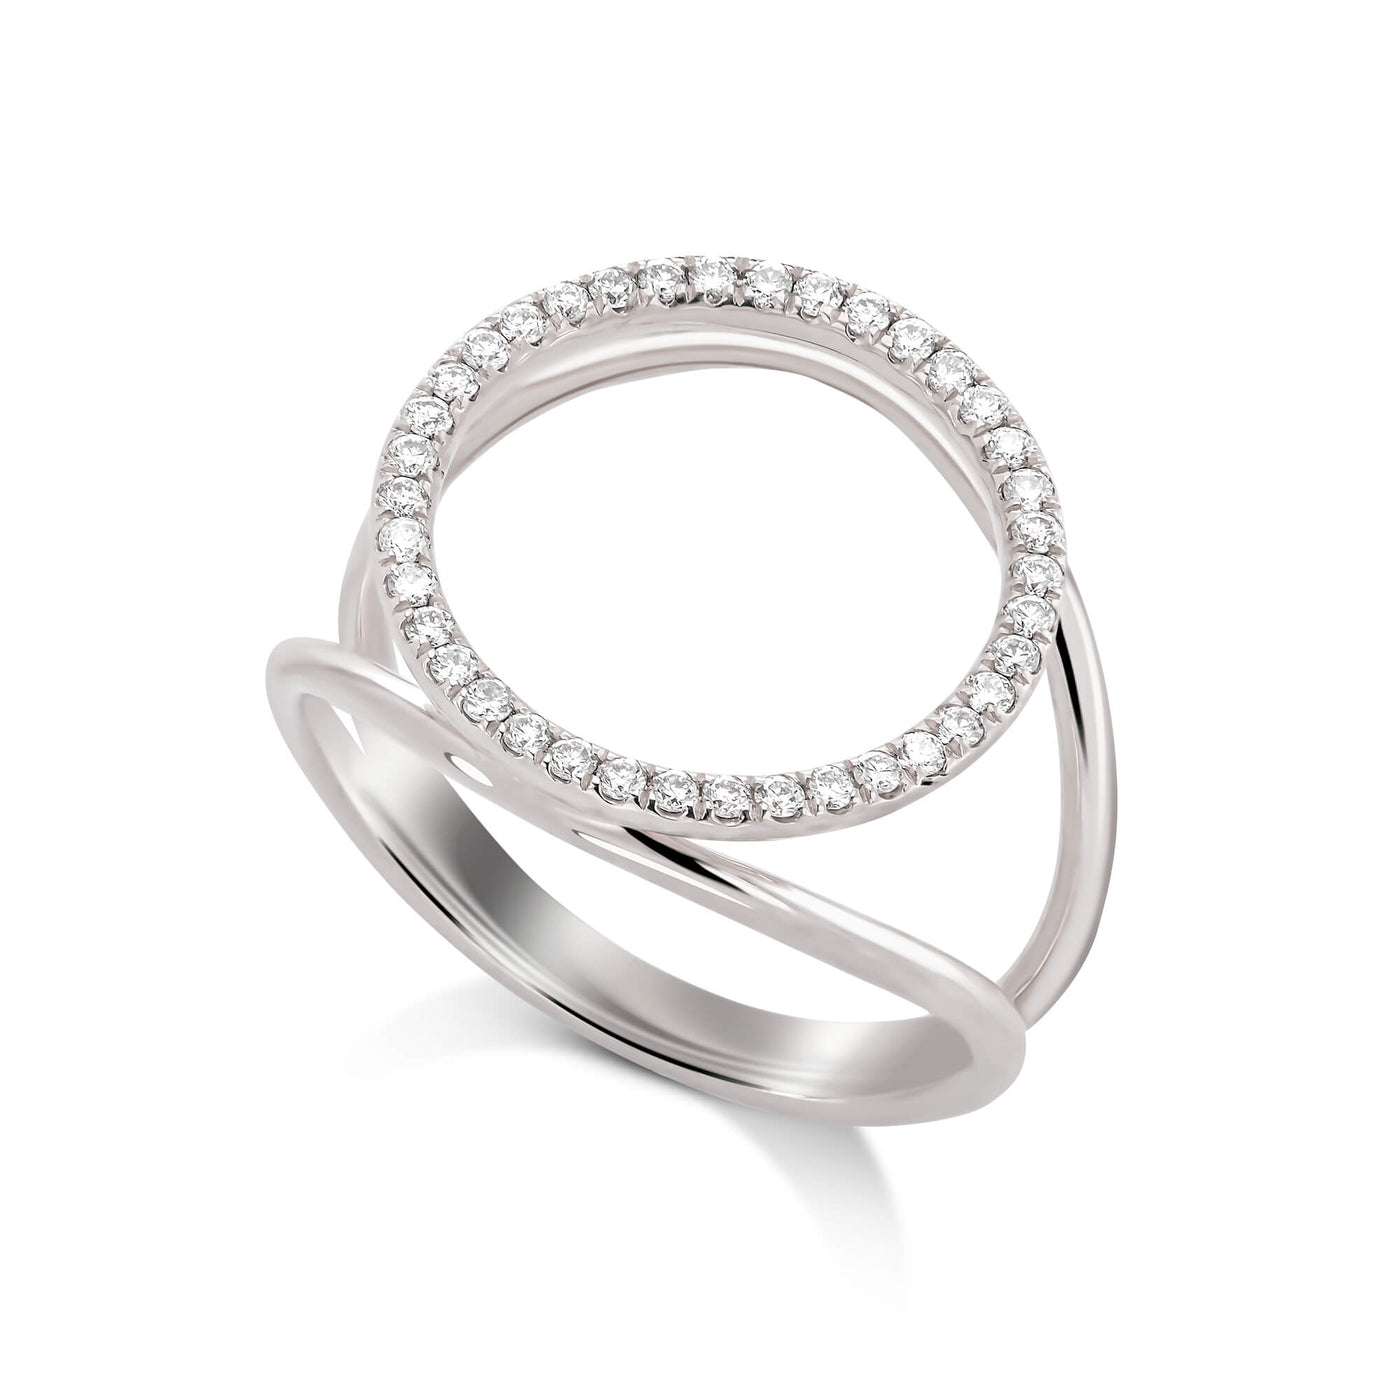 Monique Diamond Ring